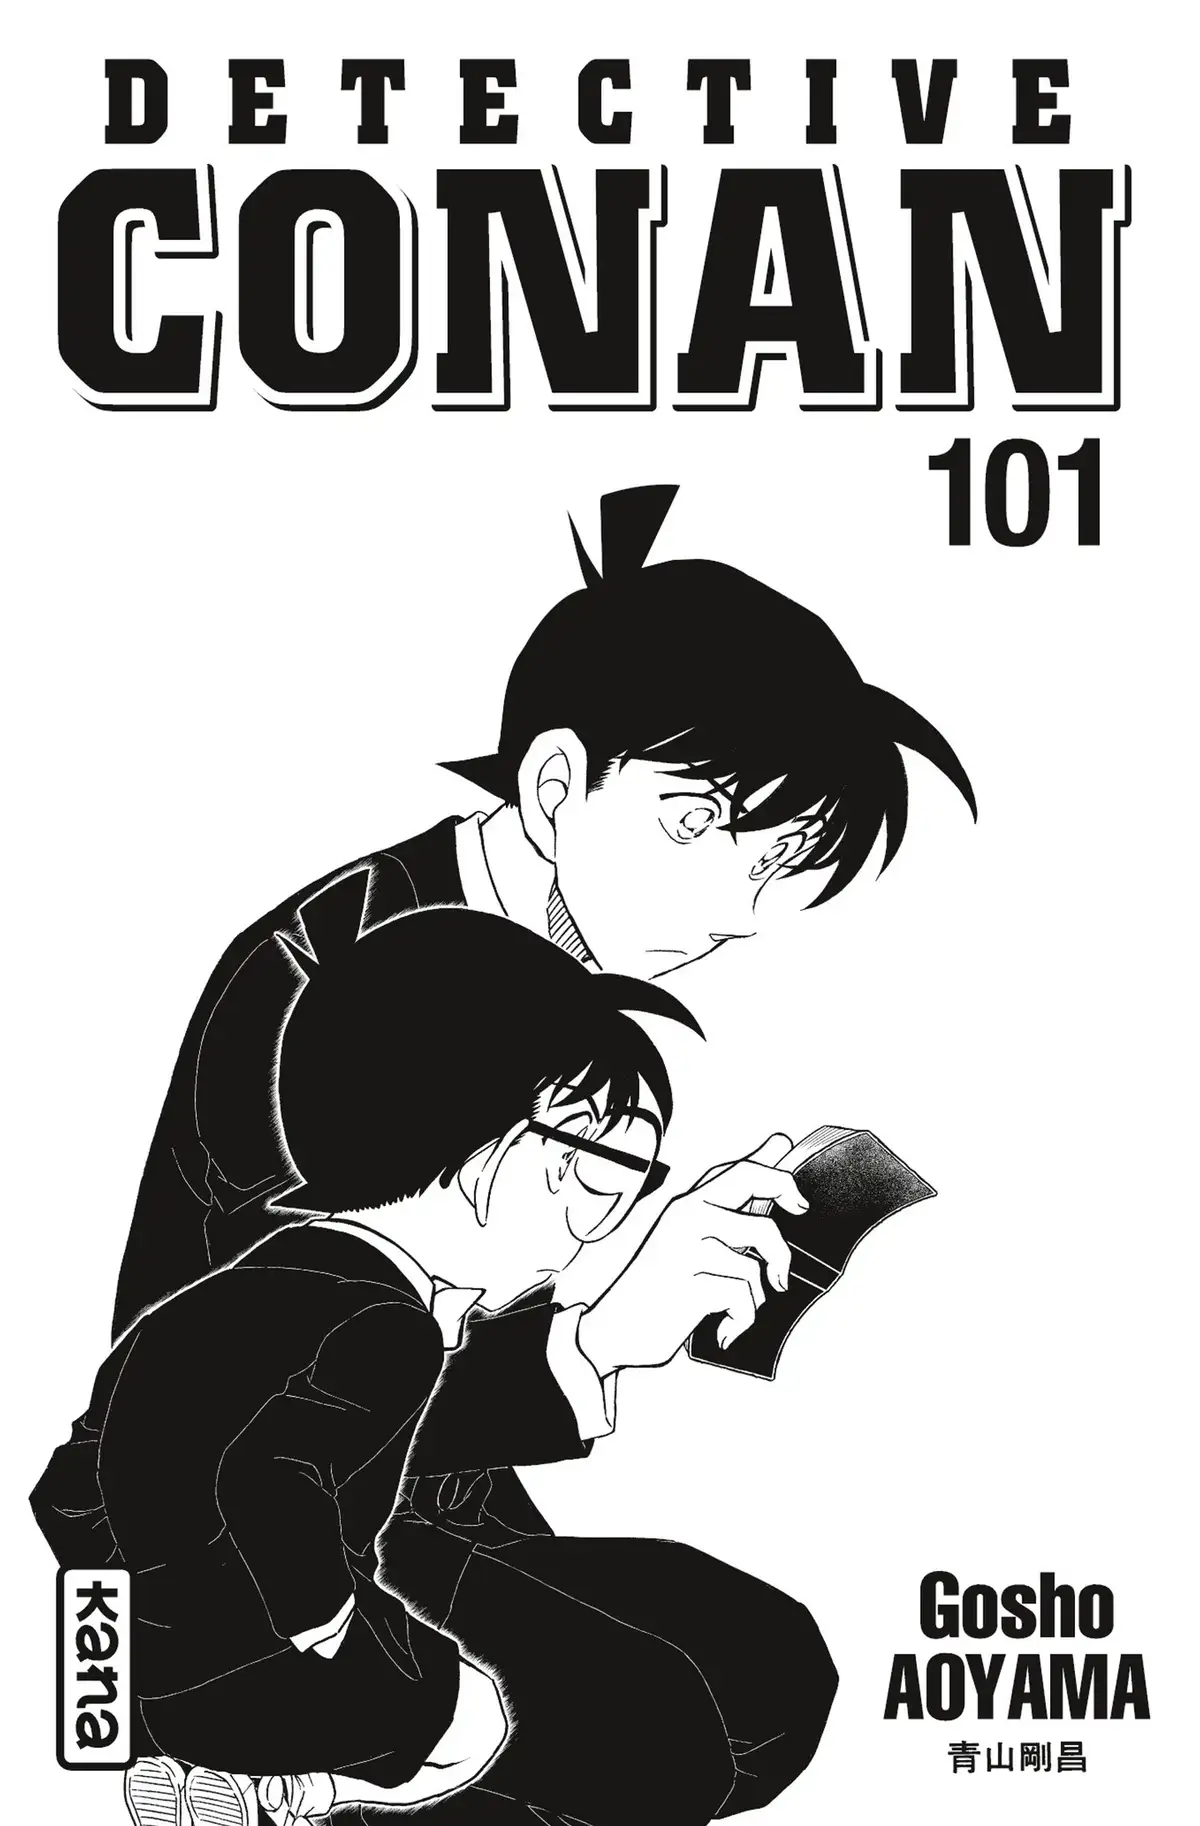 Détective Conan Volume 101 page 2